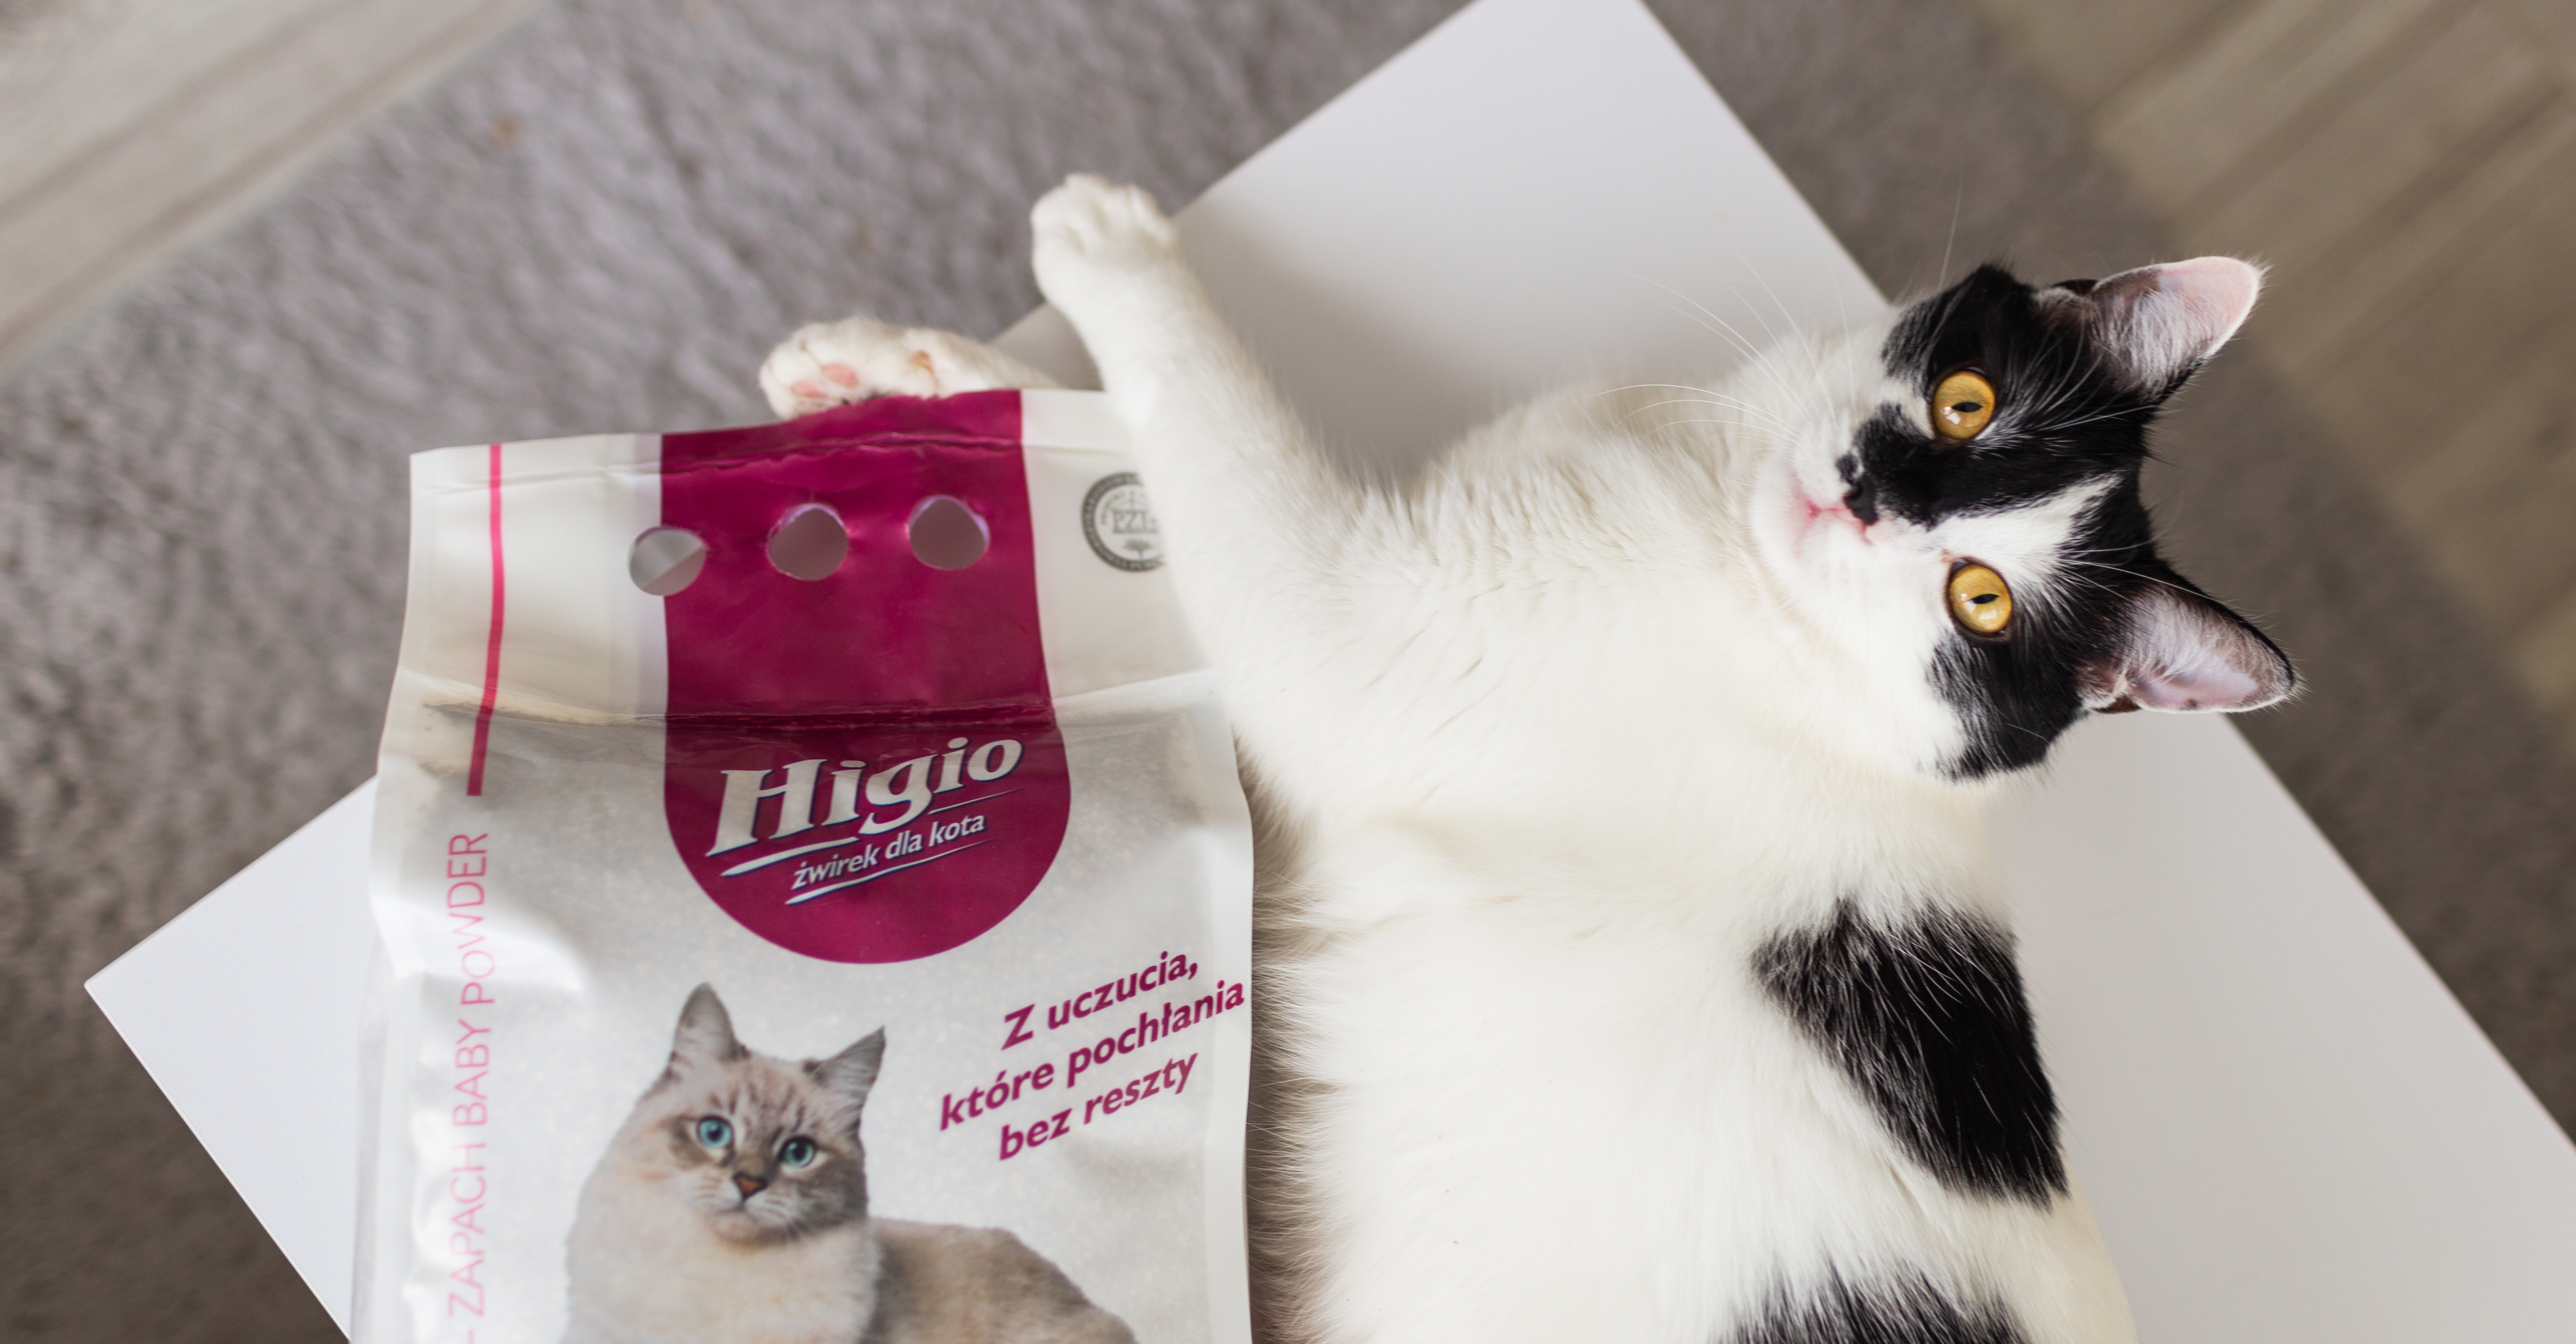 Żwirek bentonitowy dla kota od Higio – nasze odczucia